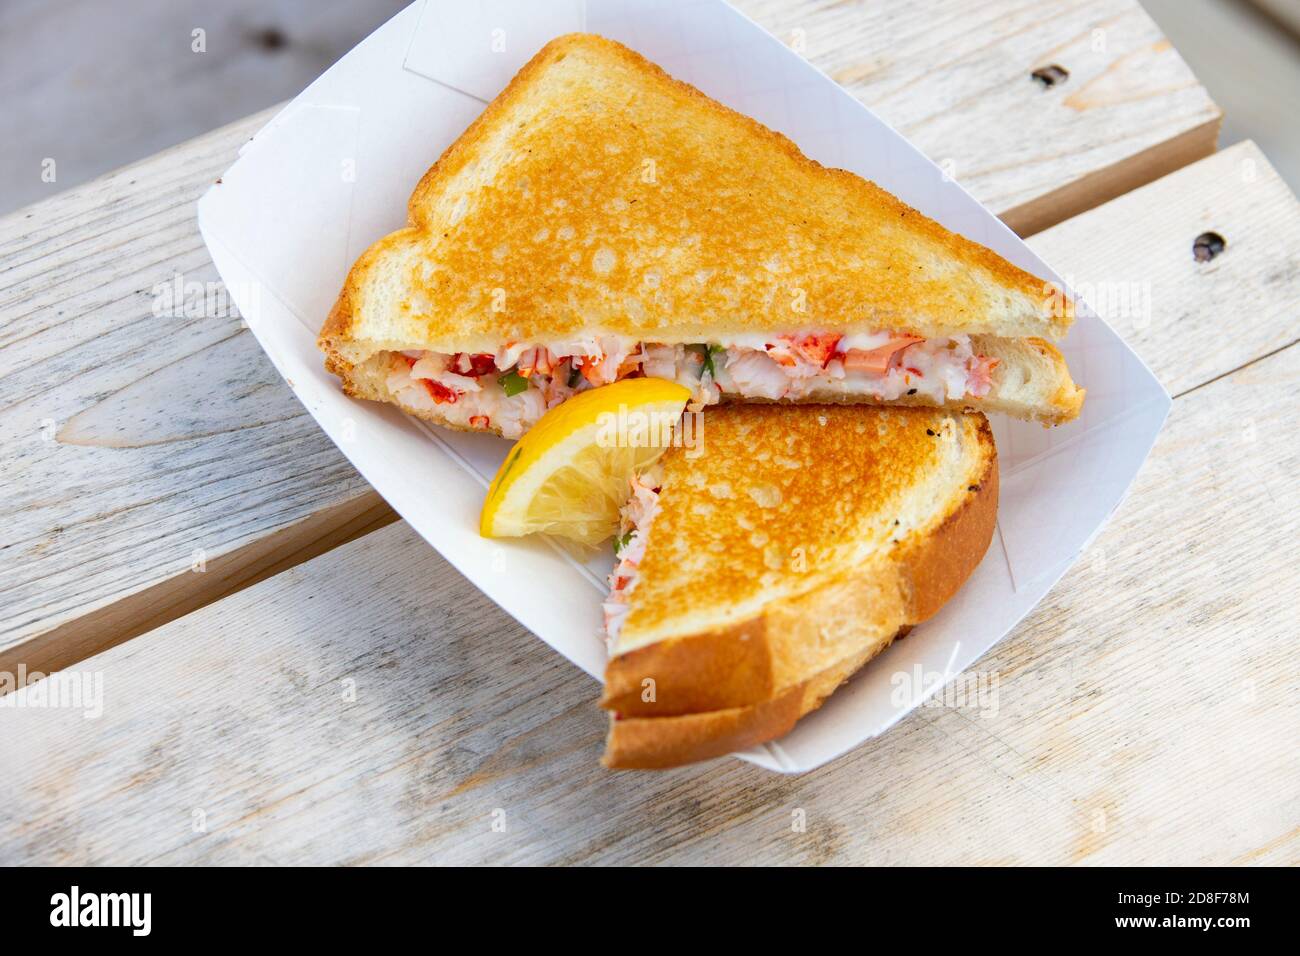 Sandwich au fromage grillé au homard, doit être Nice Lobster, Restaurant, Belfast, Maine, Etats-Unis Banque D'Images